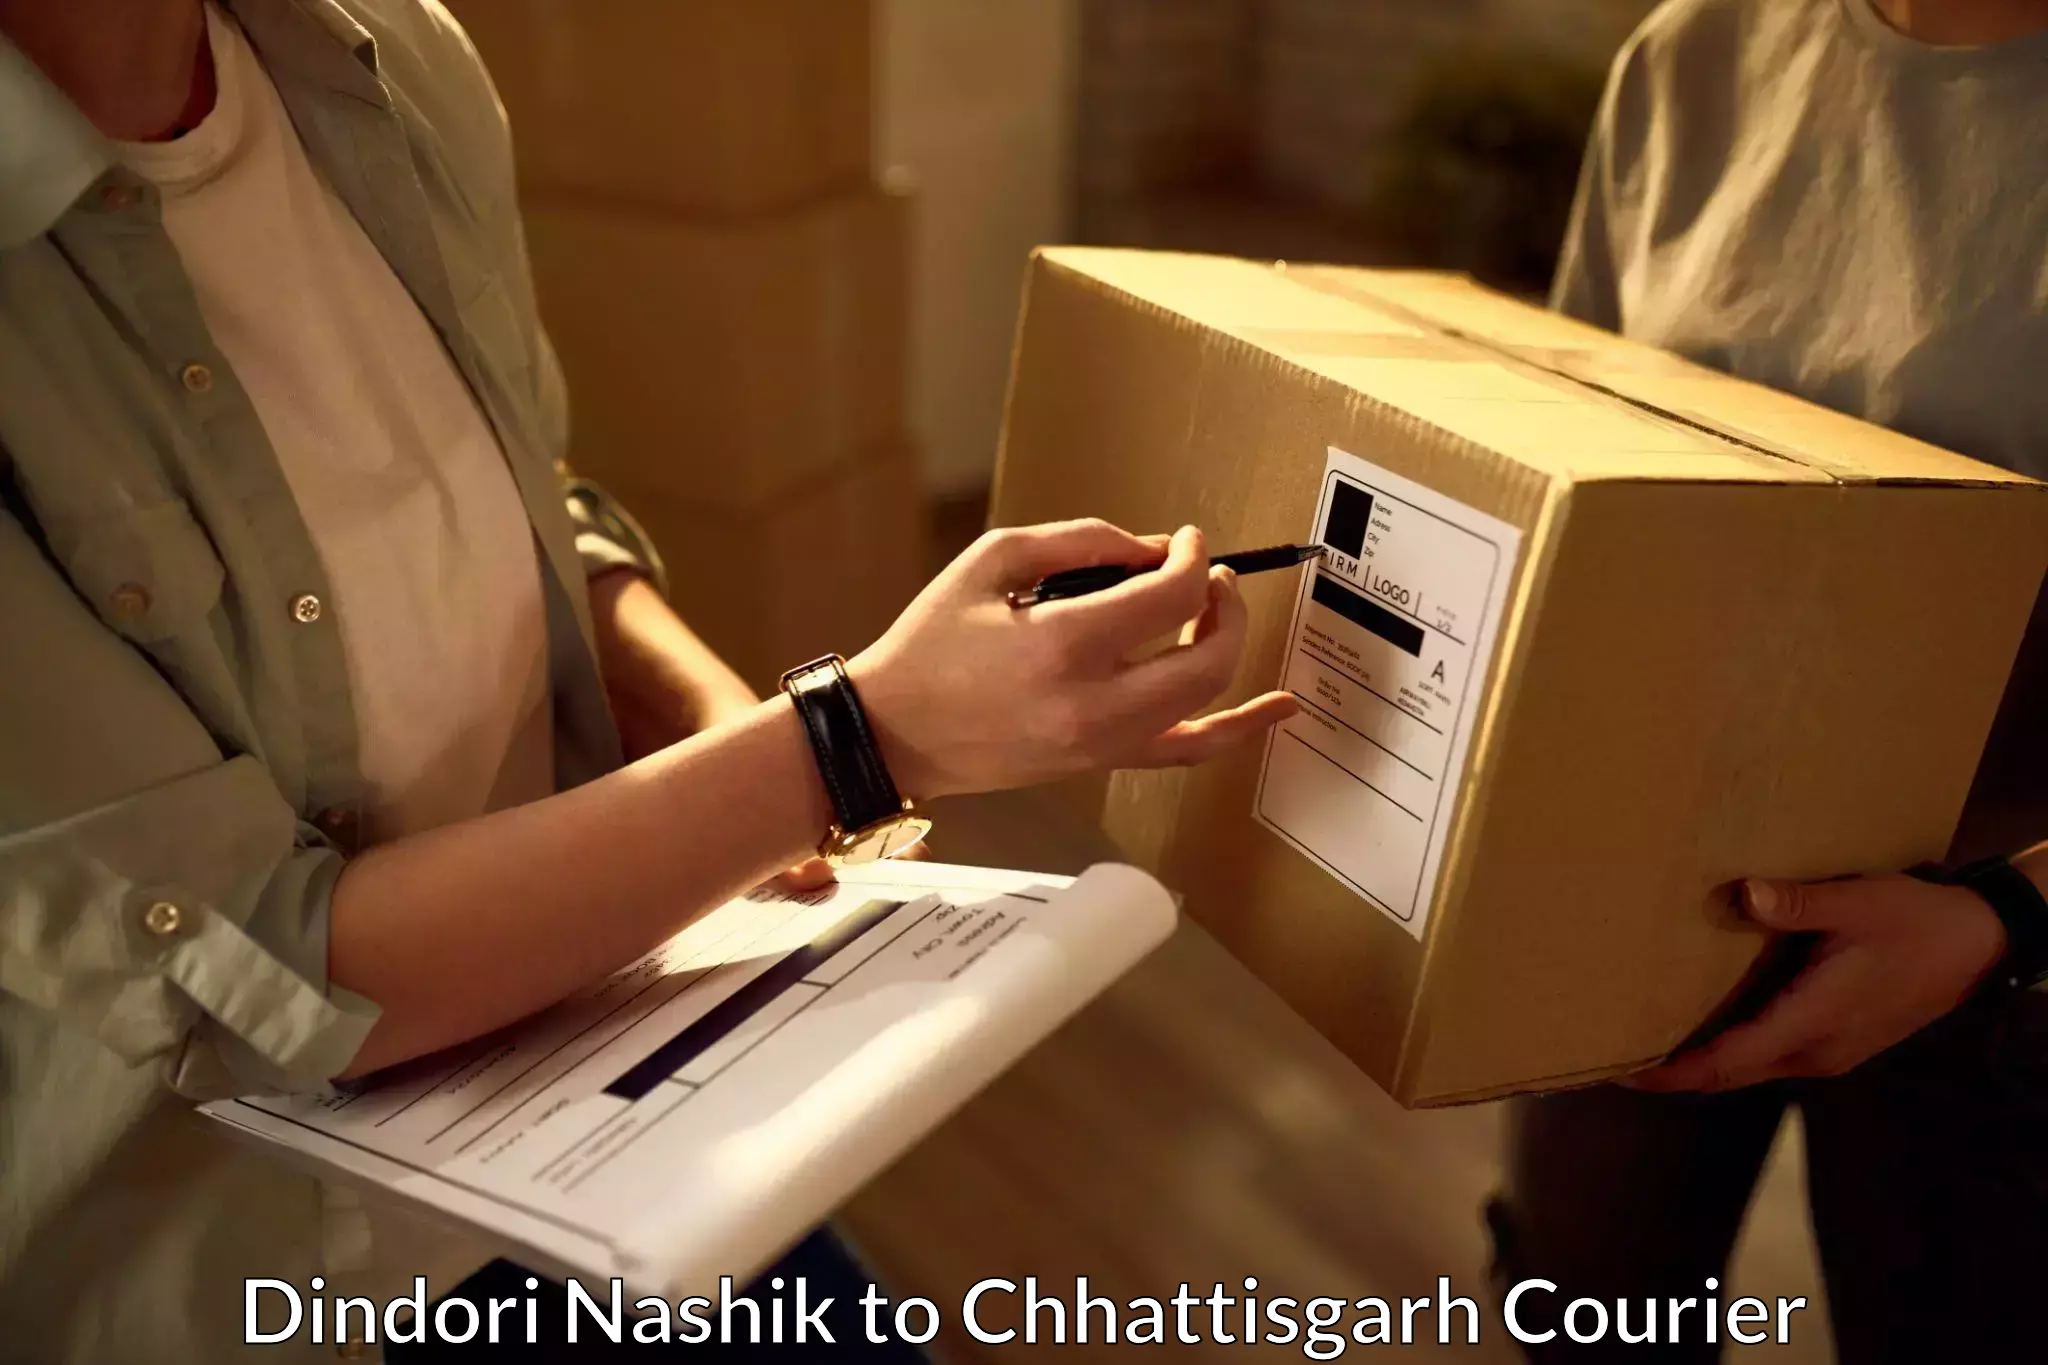 Speedy delivery service Dindori Nashik to Sakti